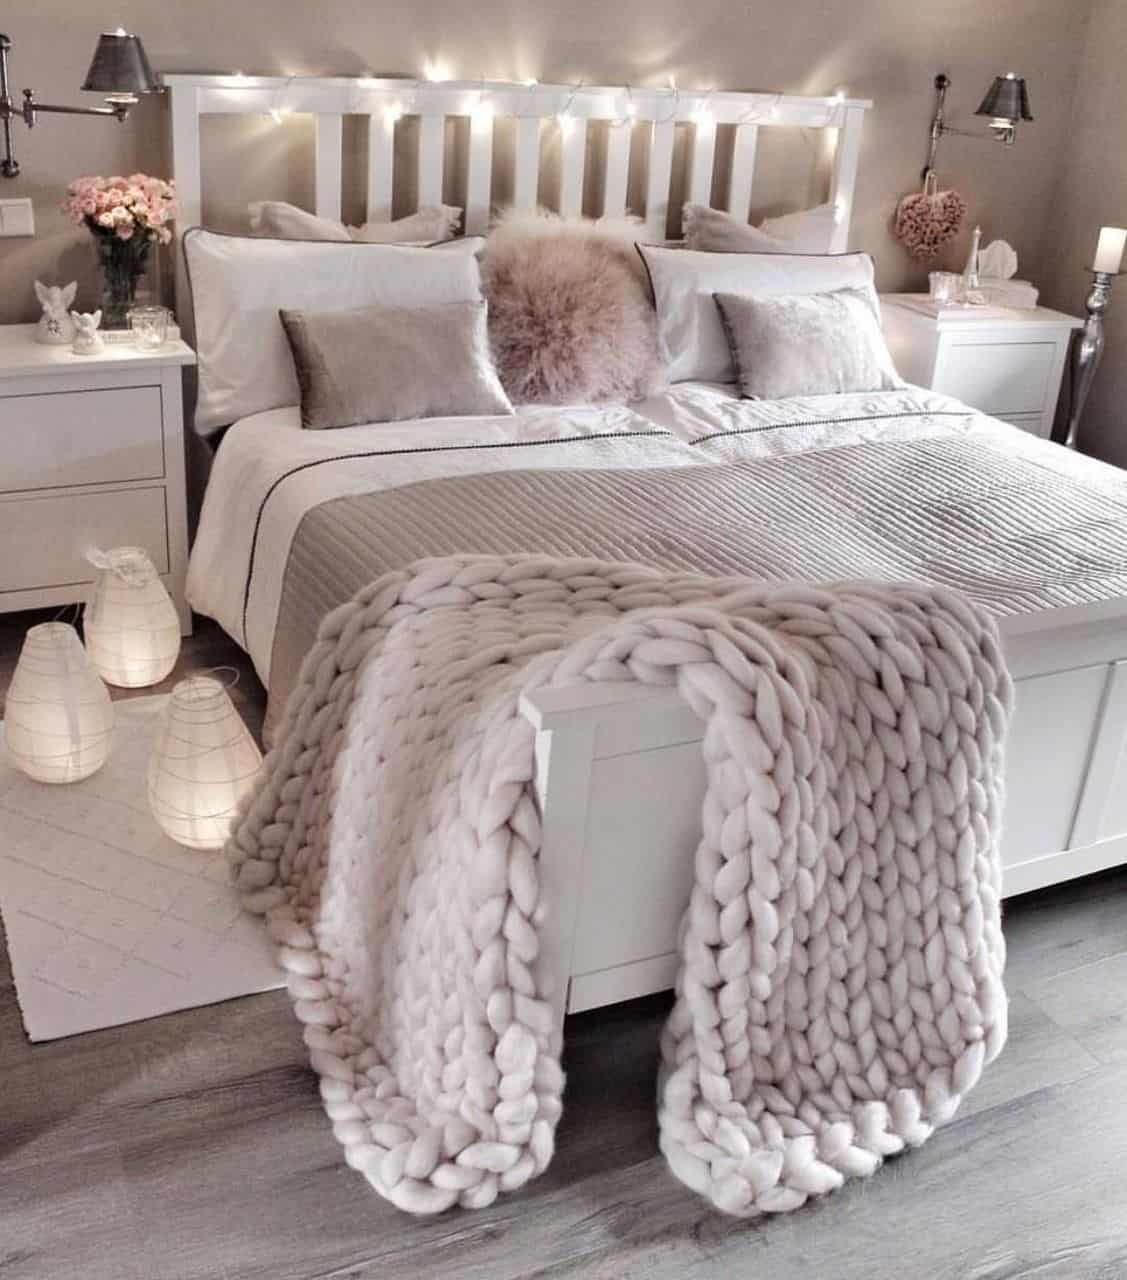 multiple blankets